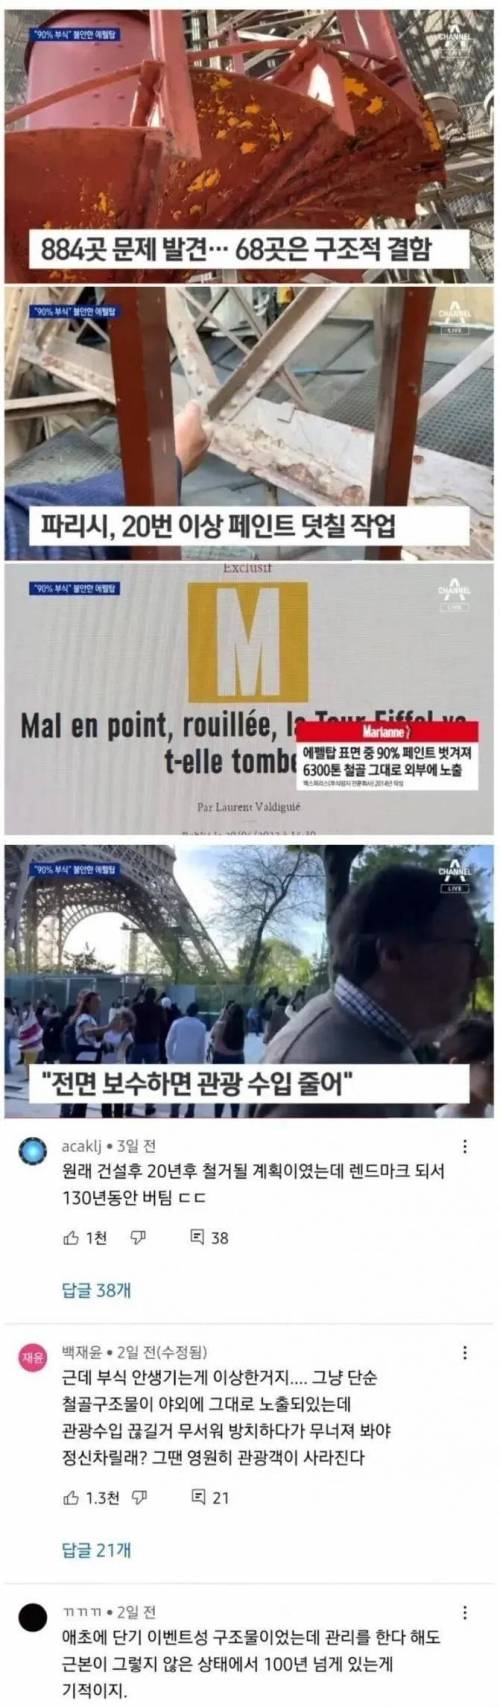 에펠탑 근황